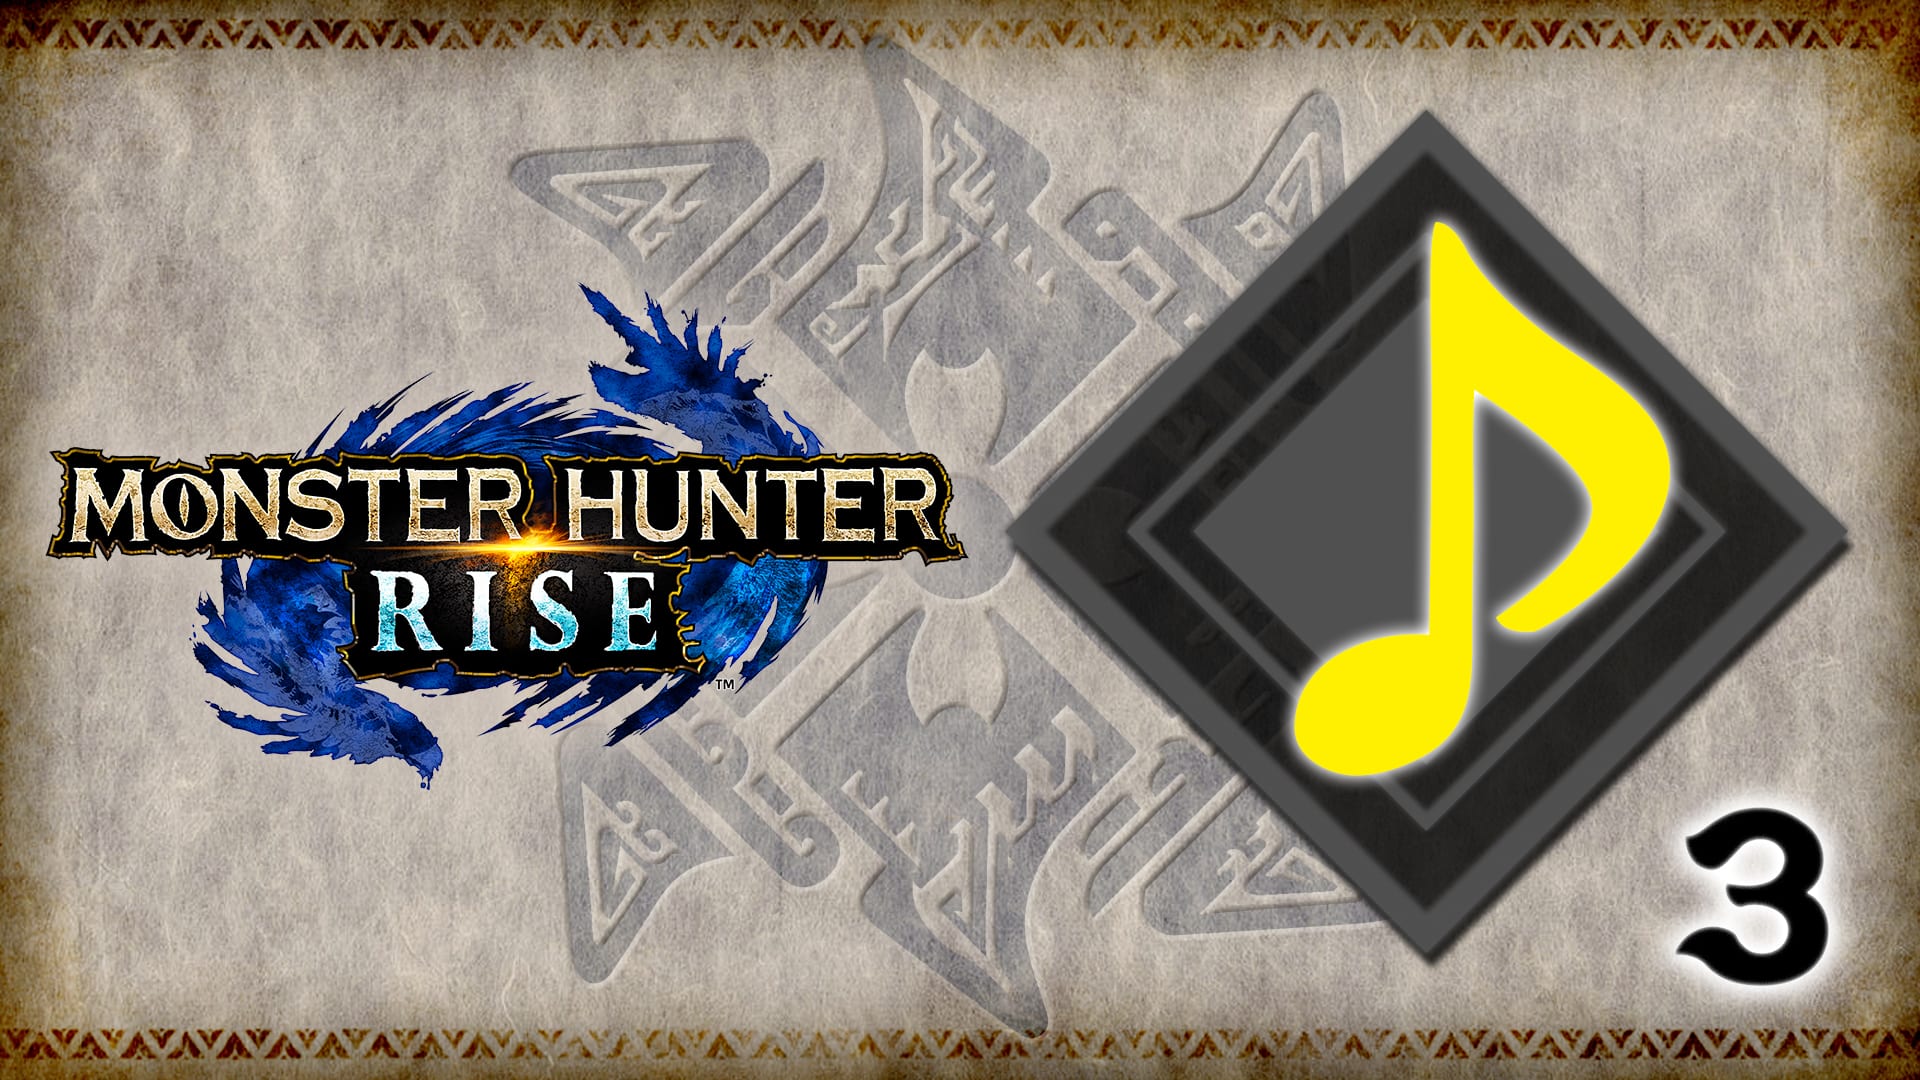 "Monster Hunter Series Bases" BGM